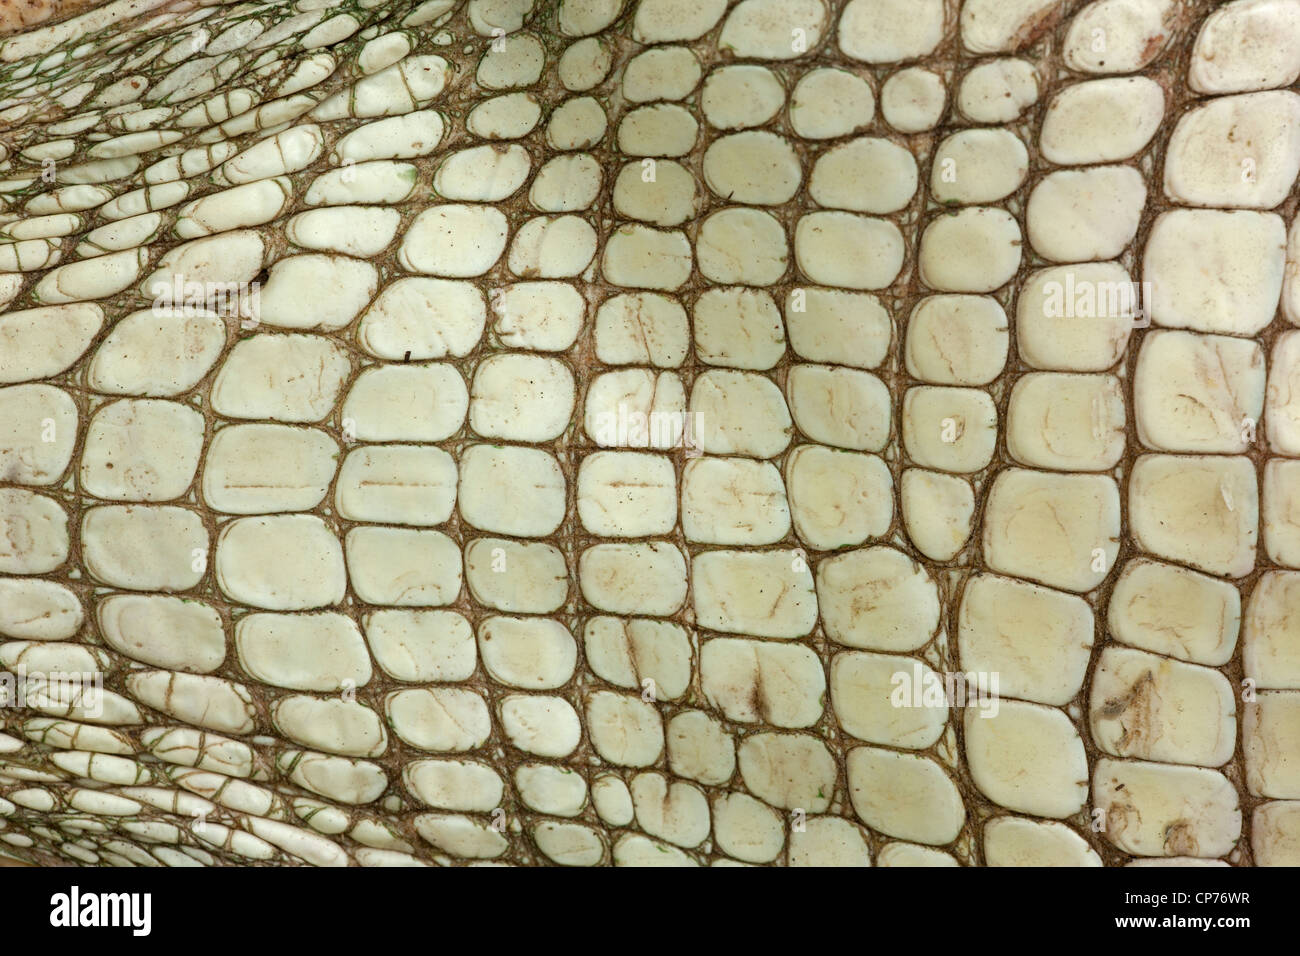 American Alligator Alligator mississippienensis, detalle de las escamas ventrales, Louisiana Foto de stock